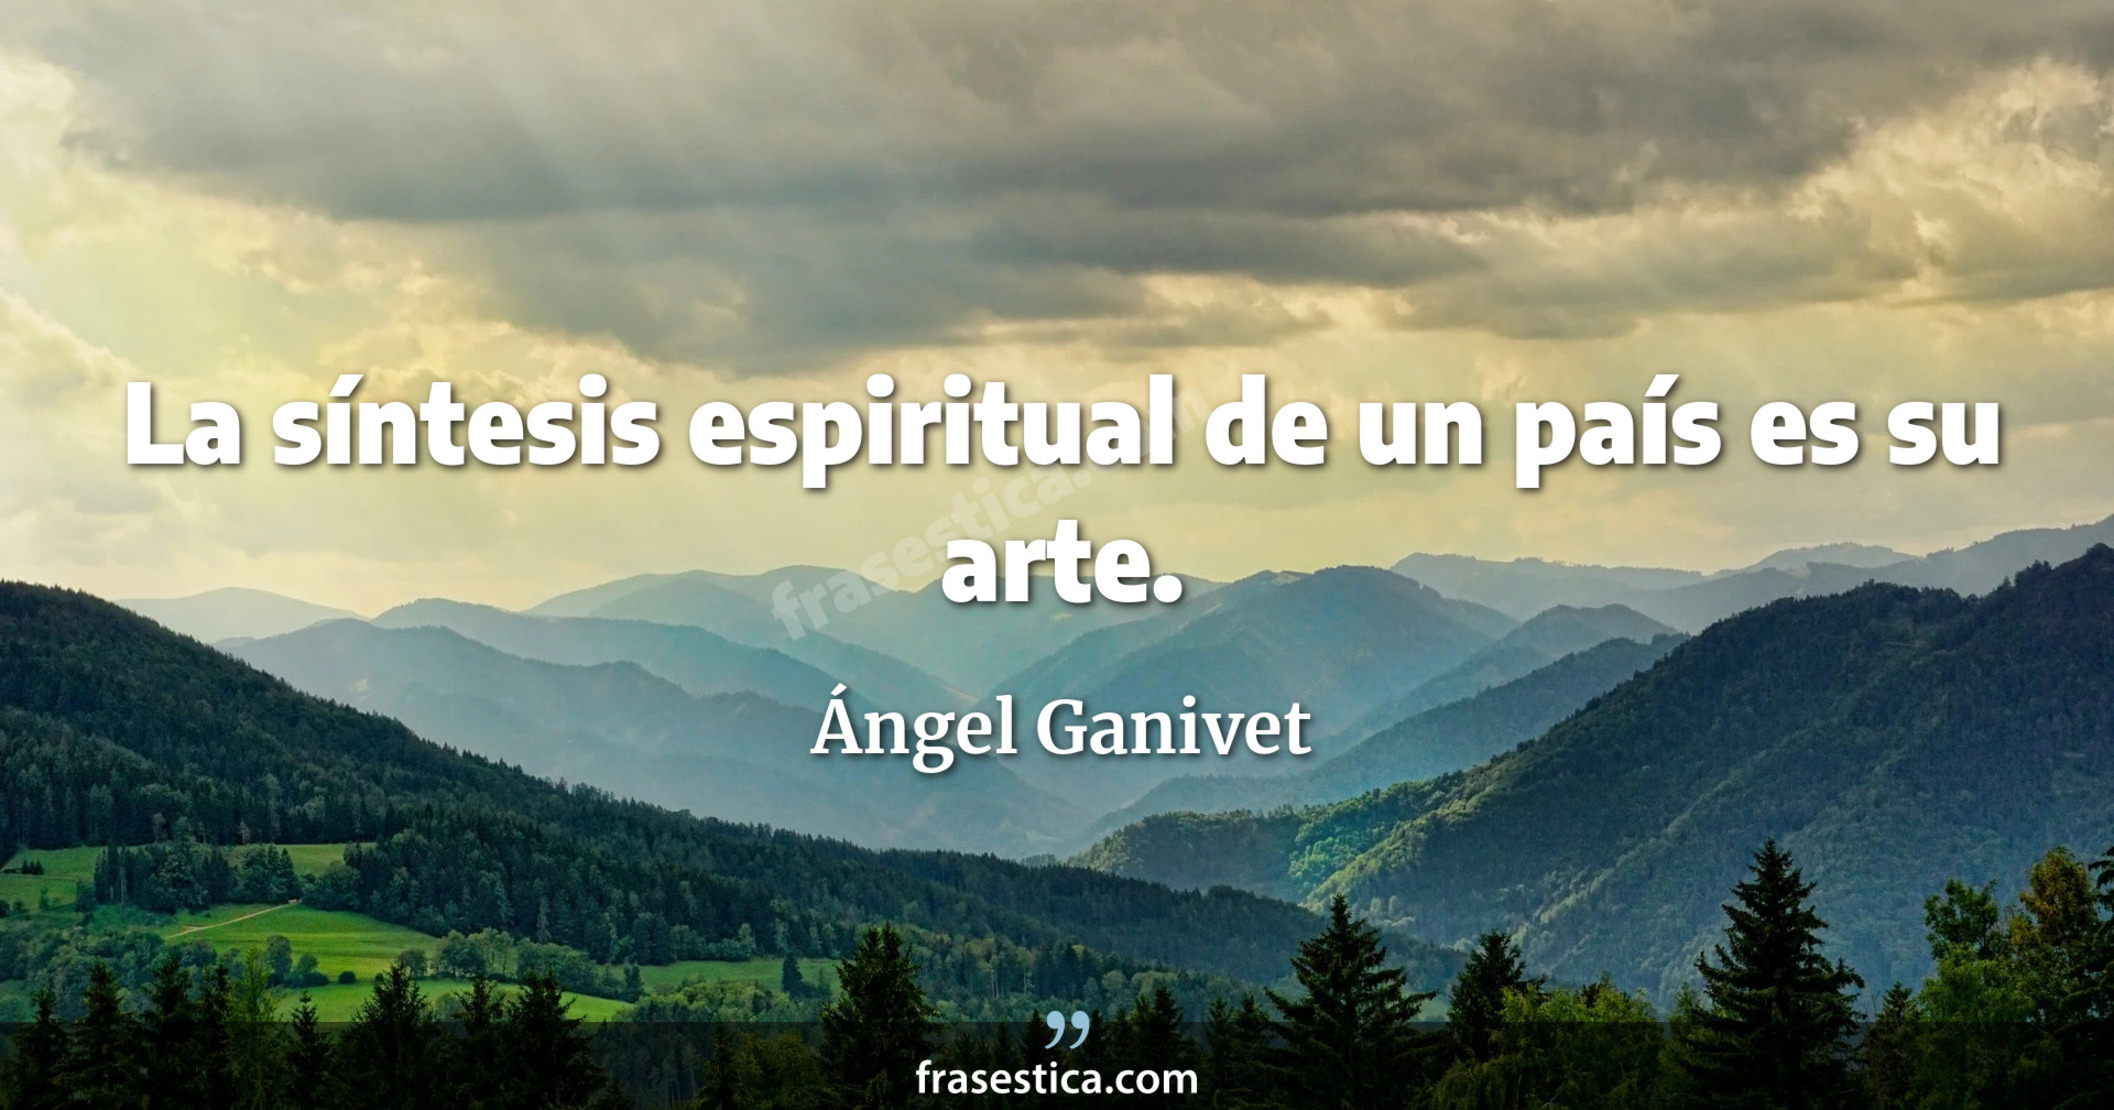 La síntesis espiritual de un país es su arte. - Ángel Ganivet